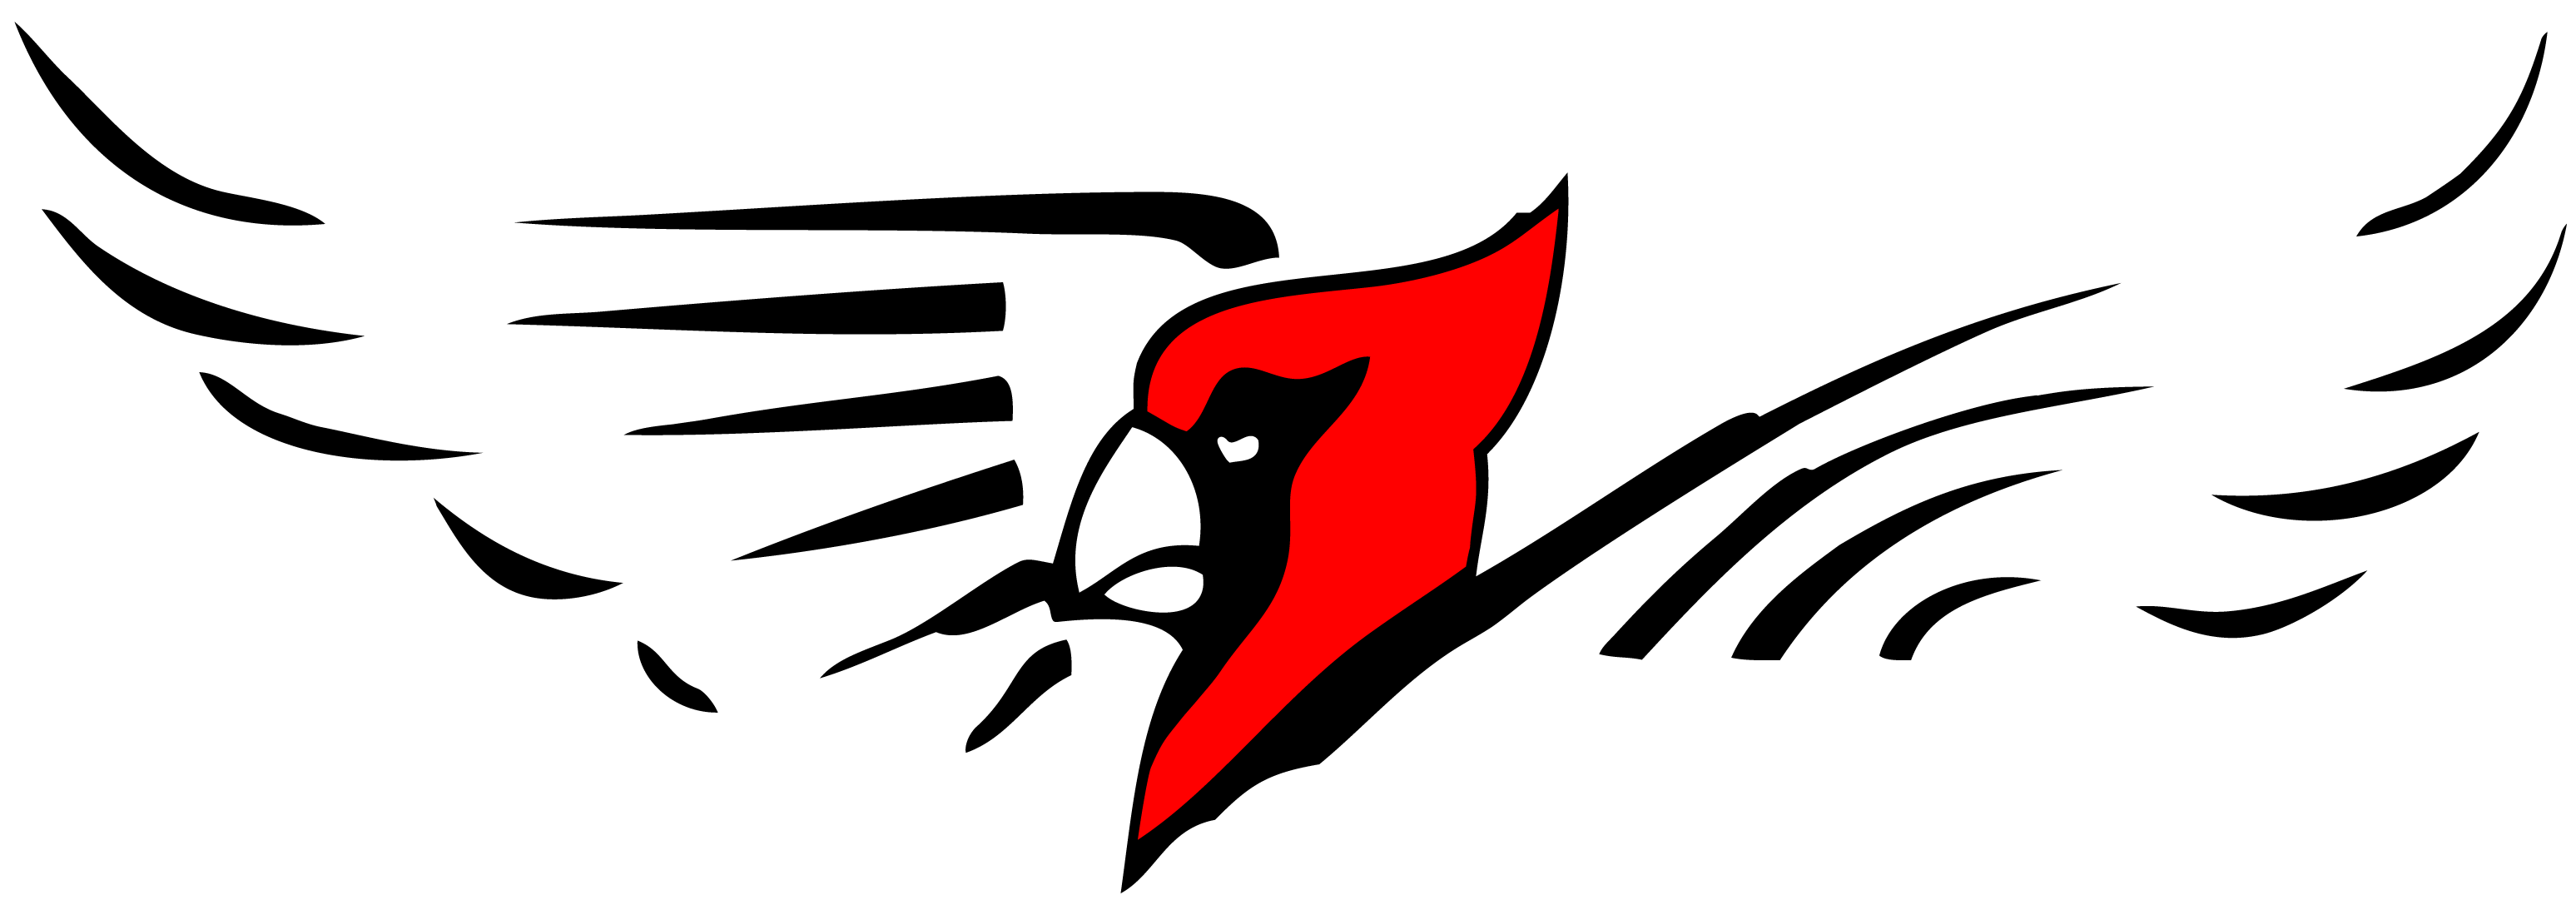 Cardinal Image - Bangor High School Cardinals Clipart (3291x1187), Png Download